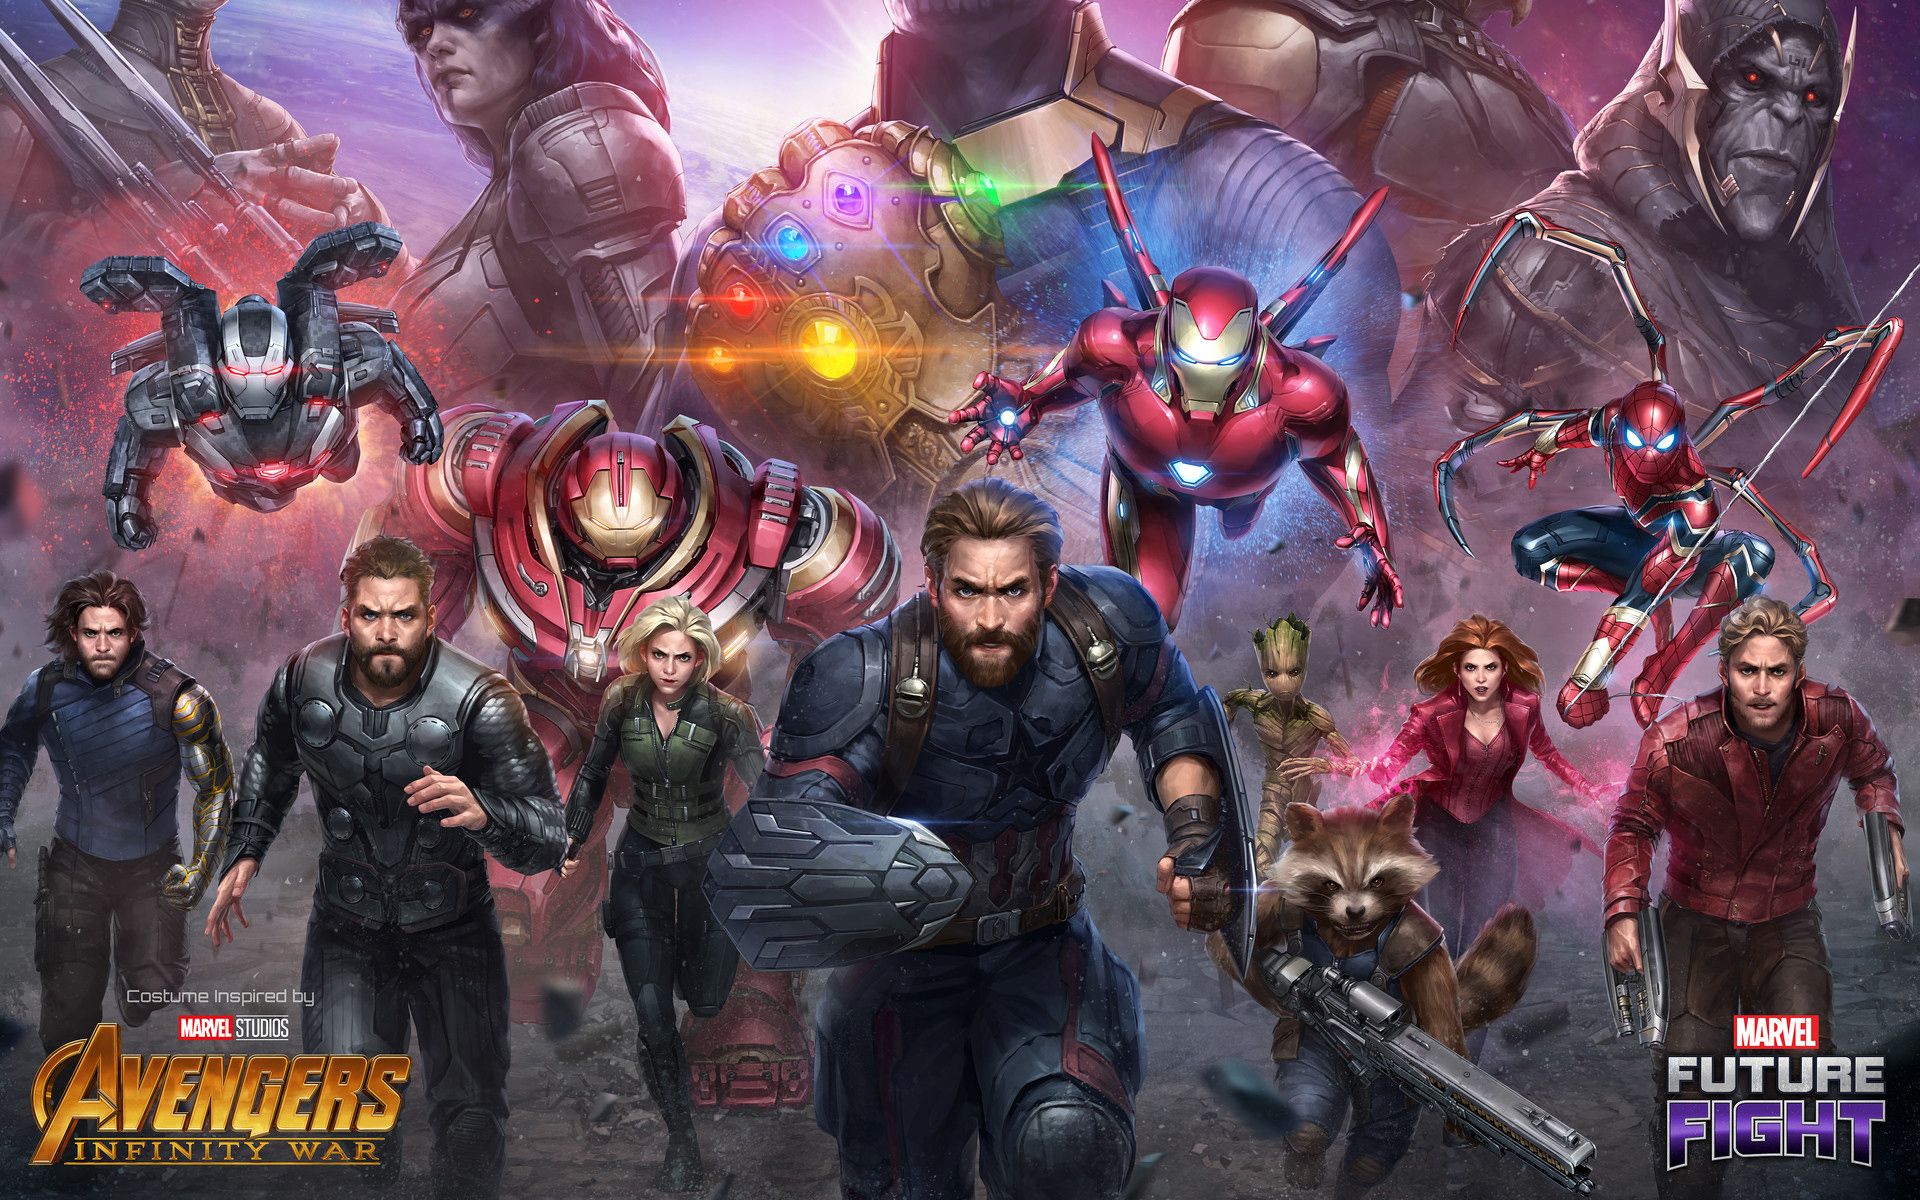 Avengers Infinity War Endgame Post Credit Scene